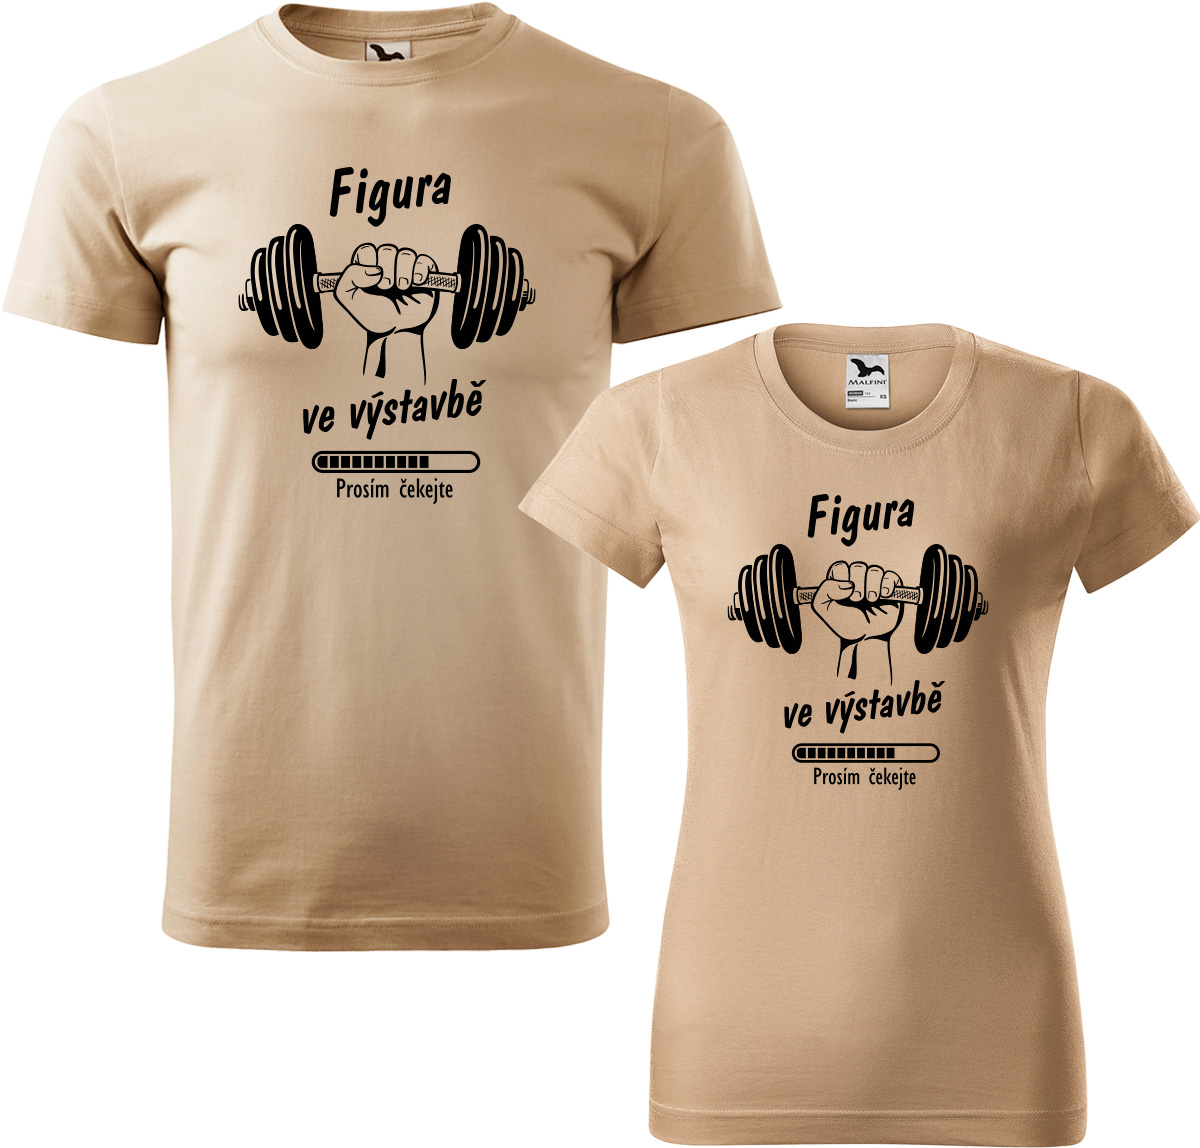 Trička pro páry - Figura ve výstavbě Barva: Písková (08), Velikost dámské tričko: XL, Velikost pánské tričko: XL